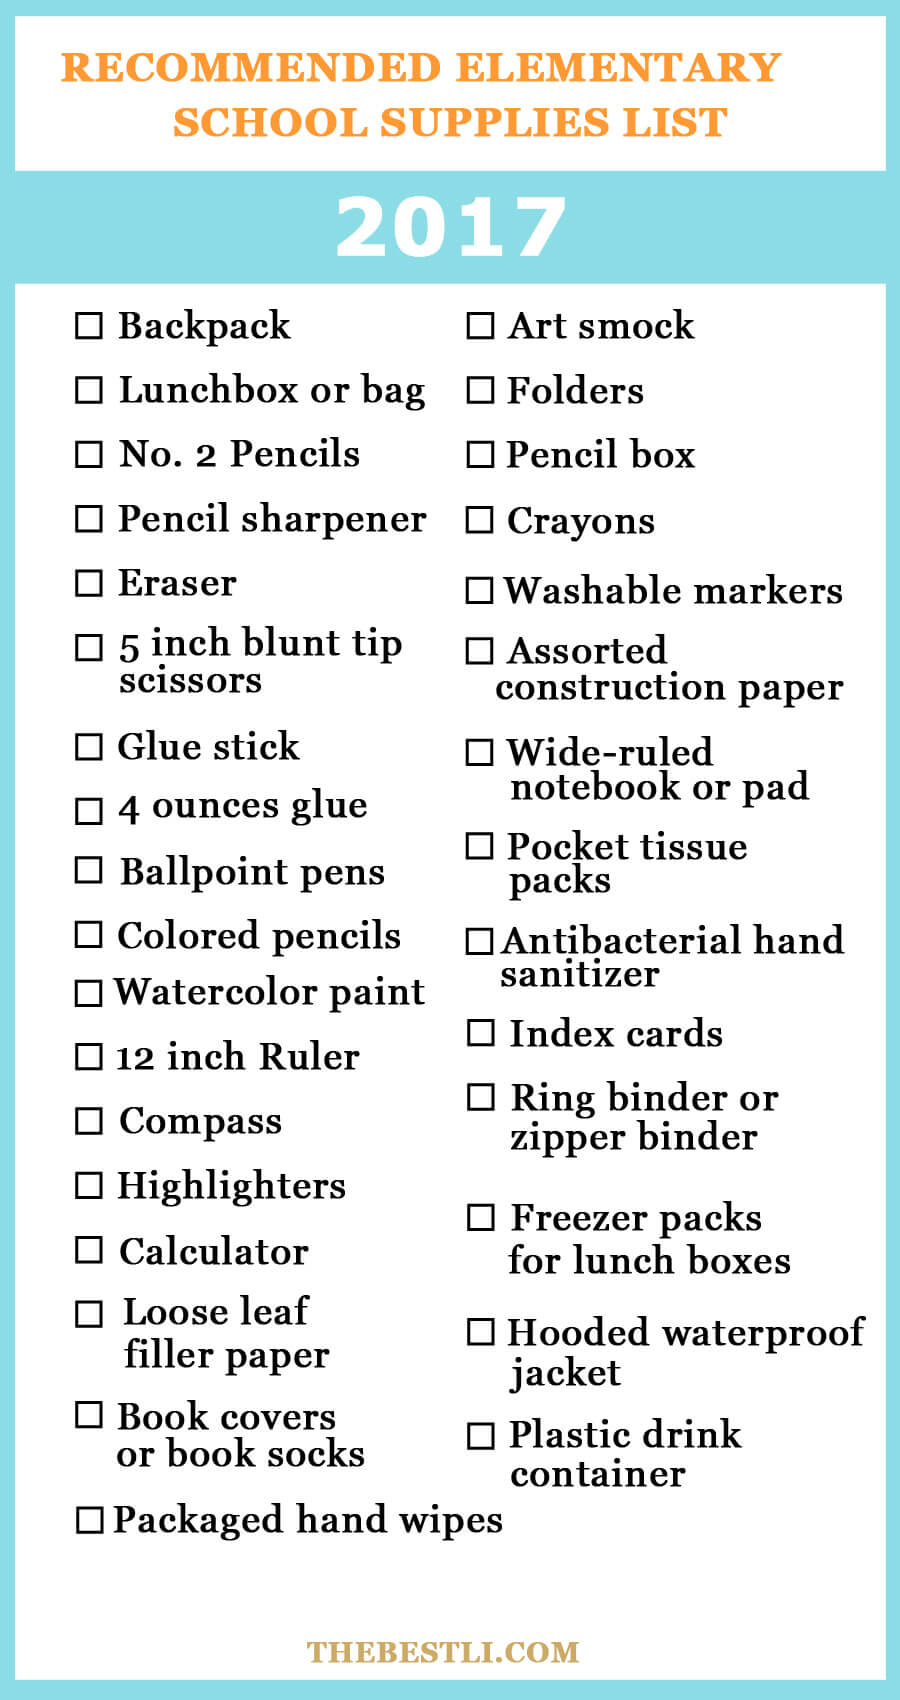 Elementary school supplies checklist